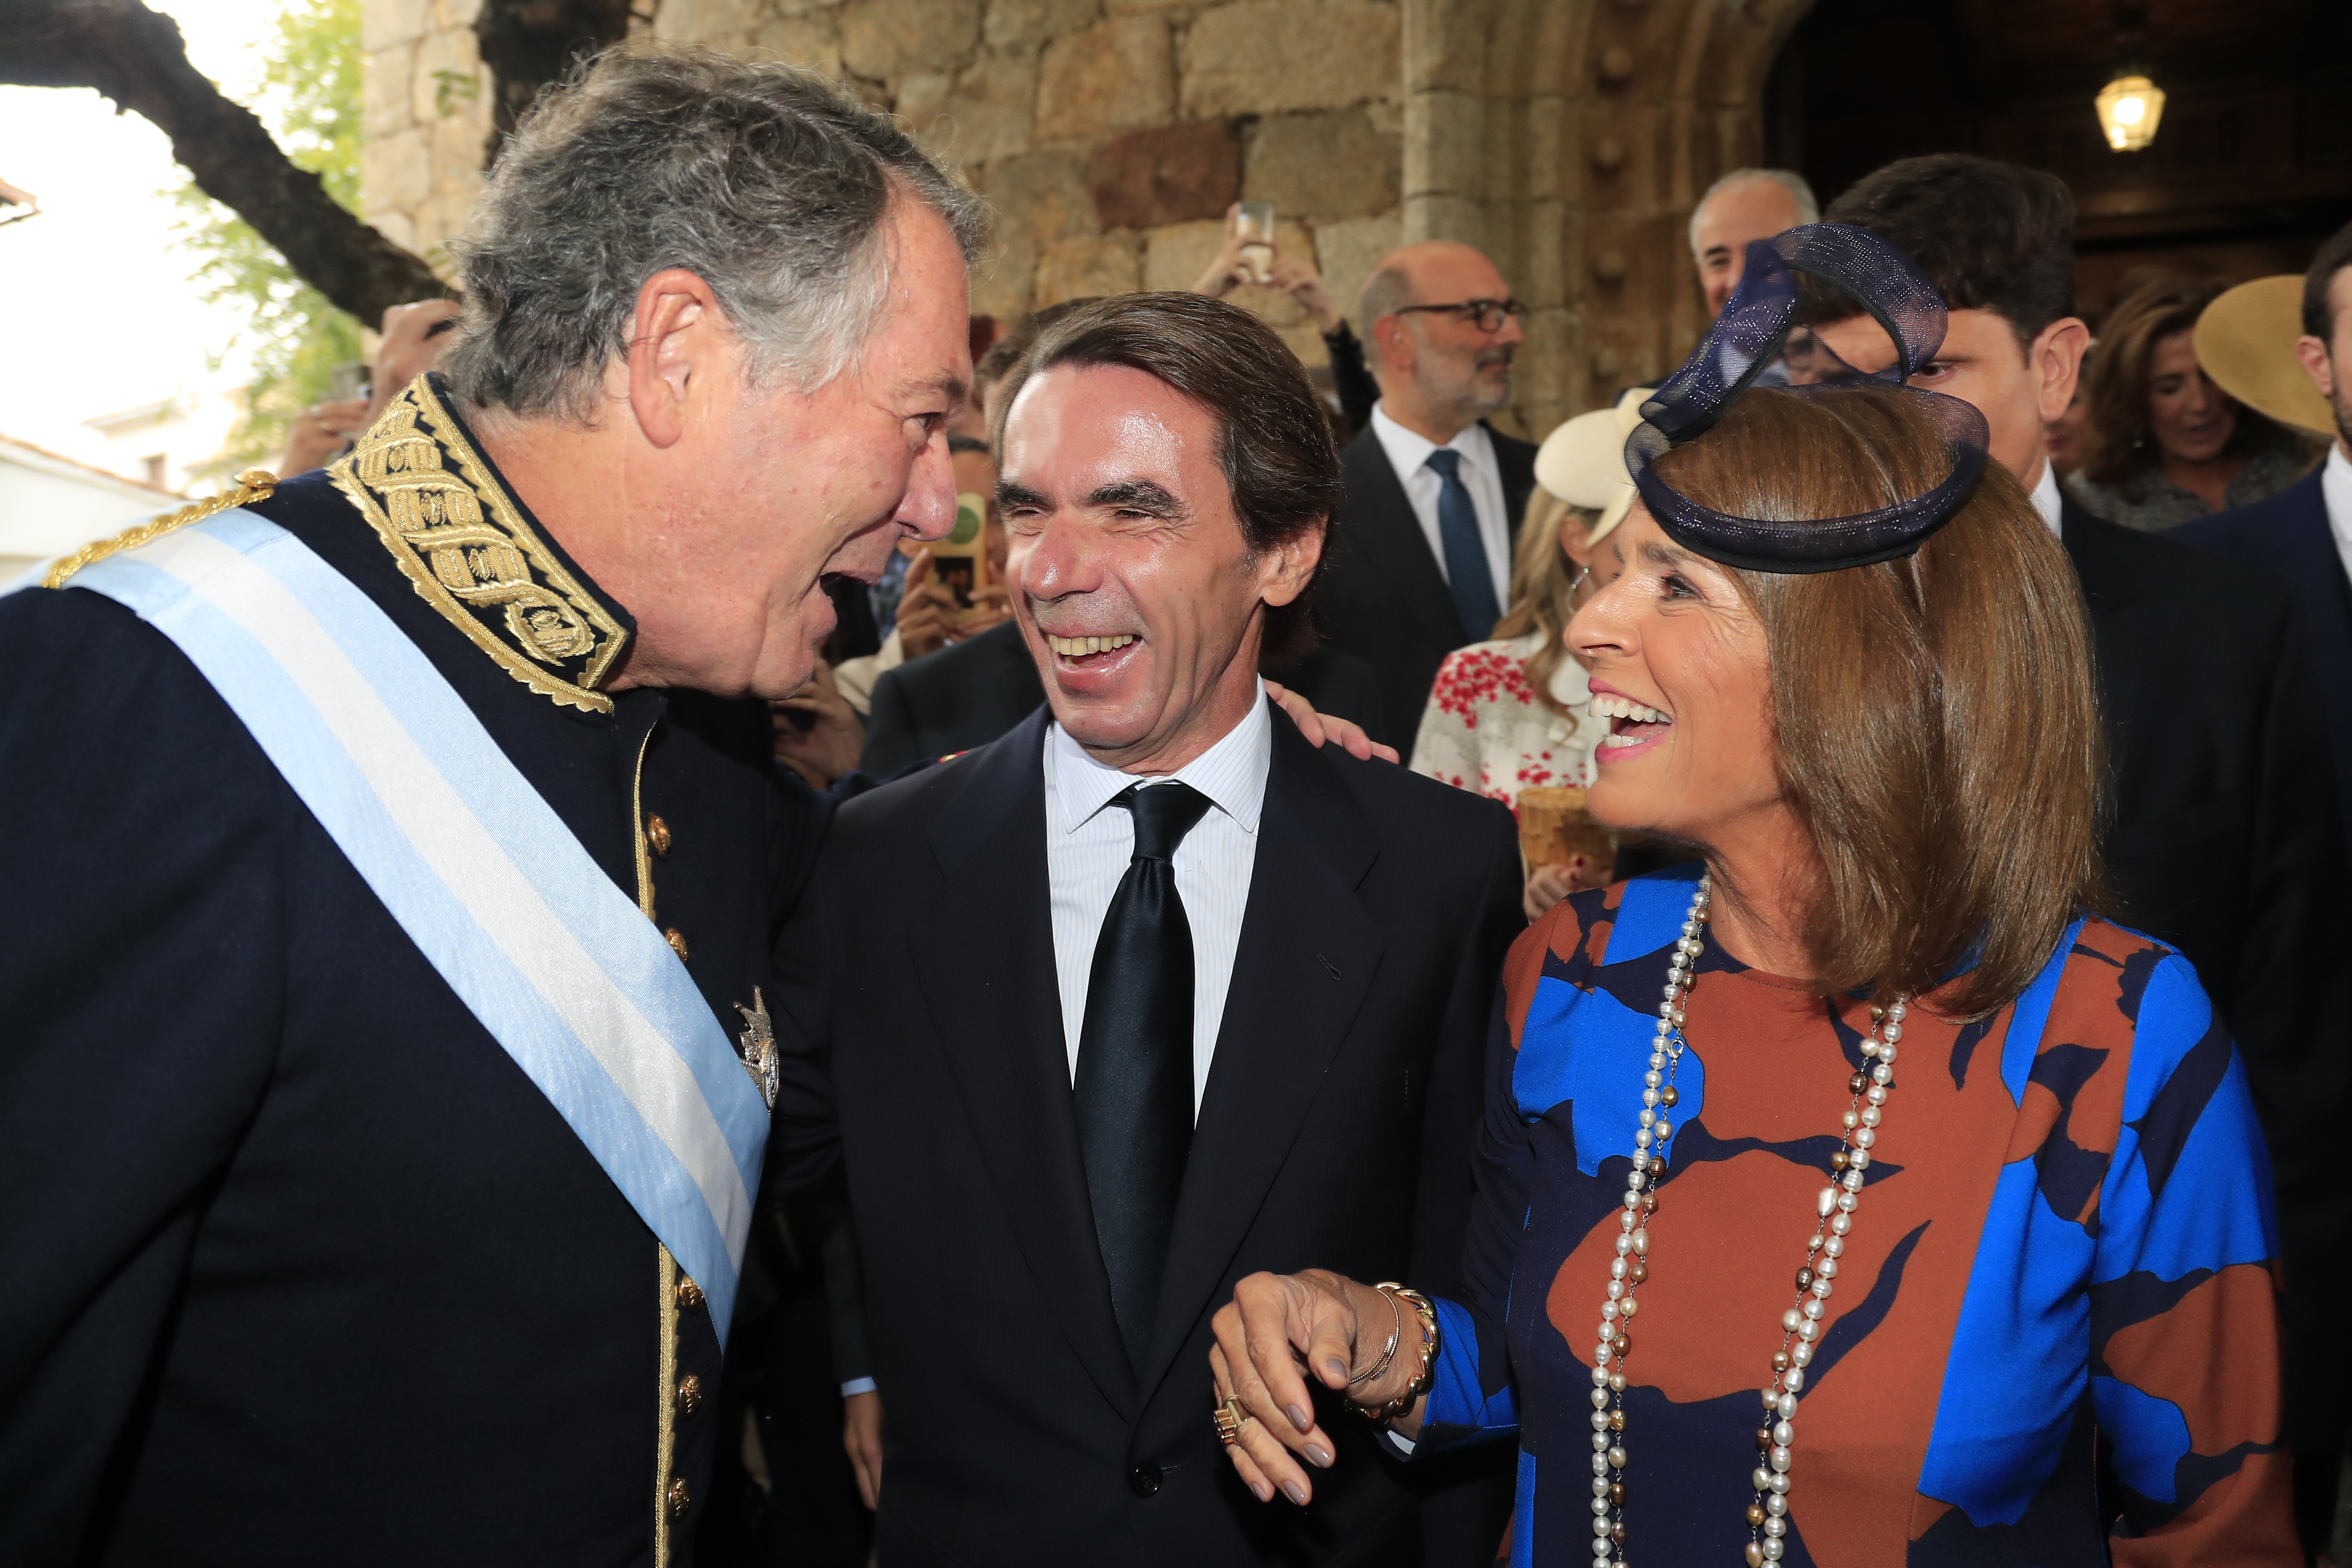 Aznar y Botella indignan por su gesto en plena crisis por el COVID-19: "Asco"